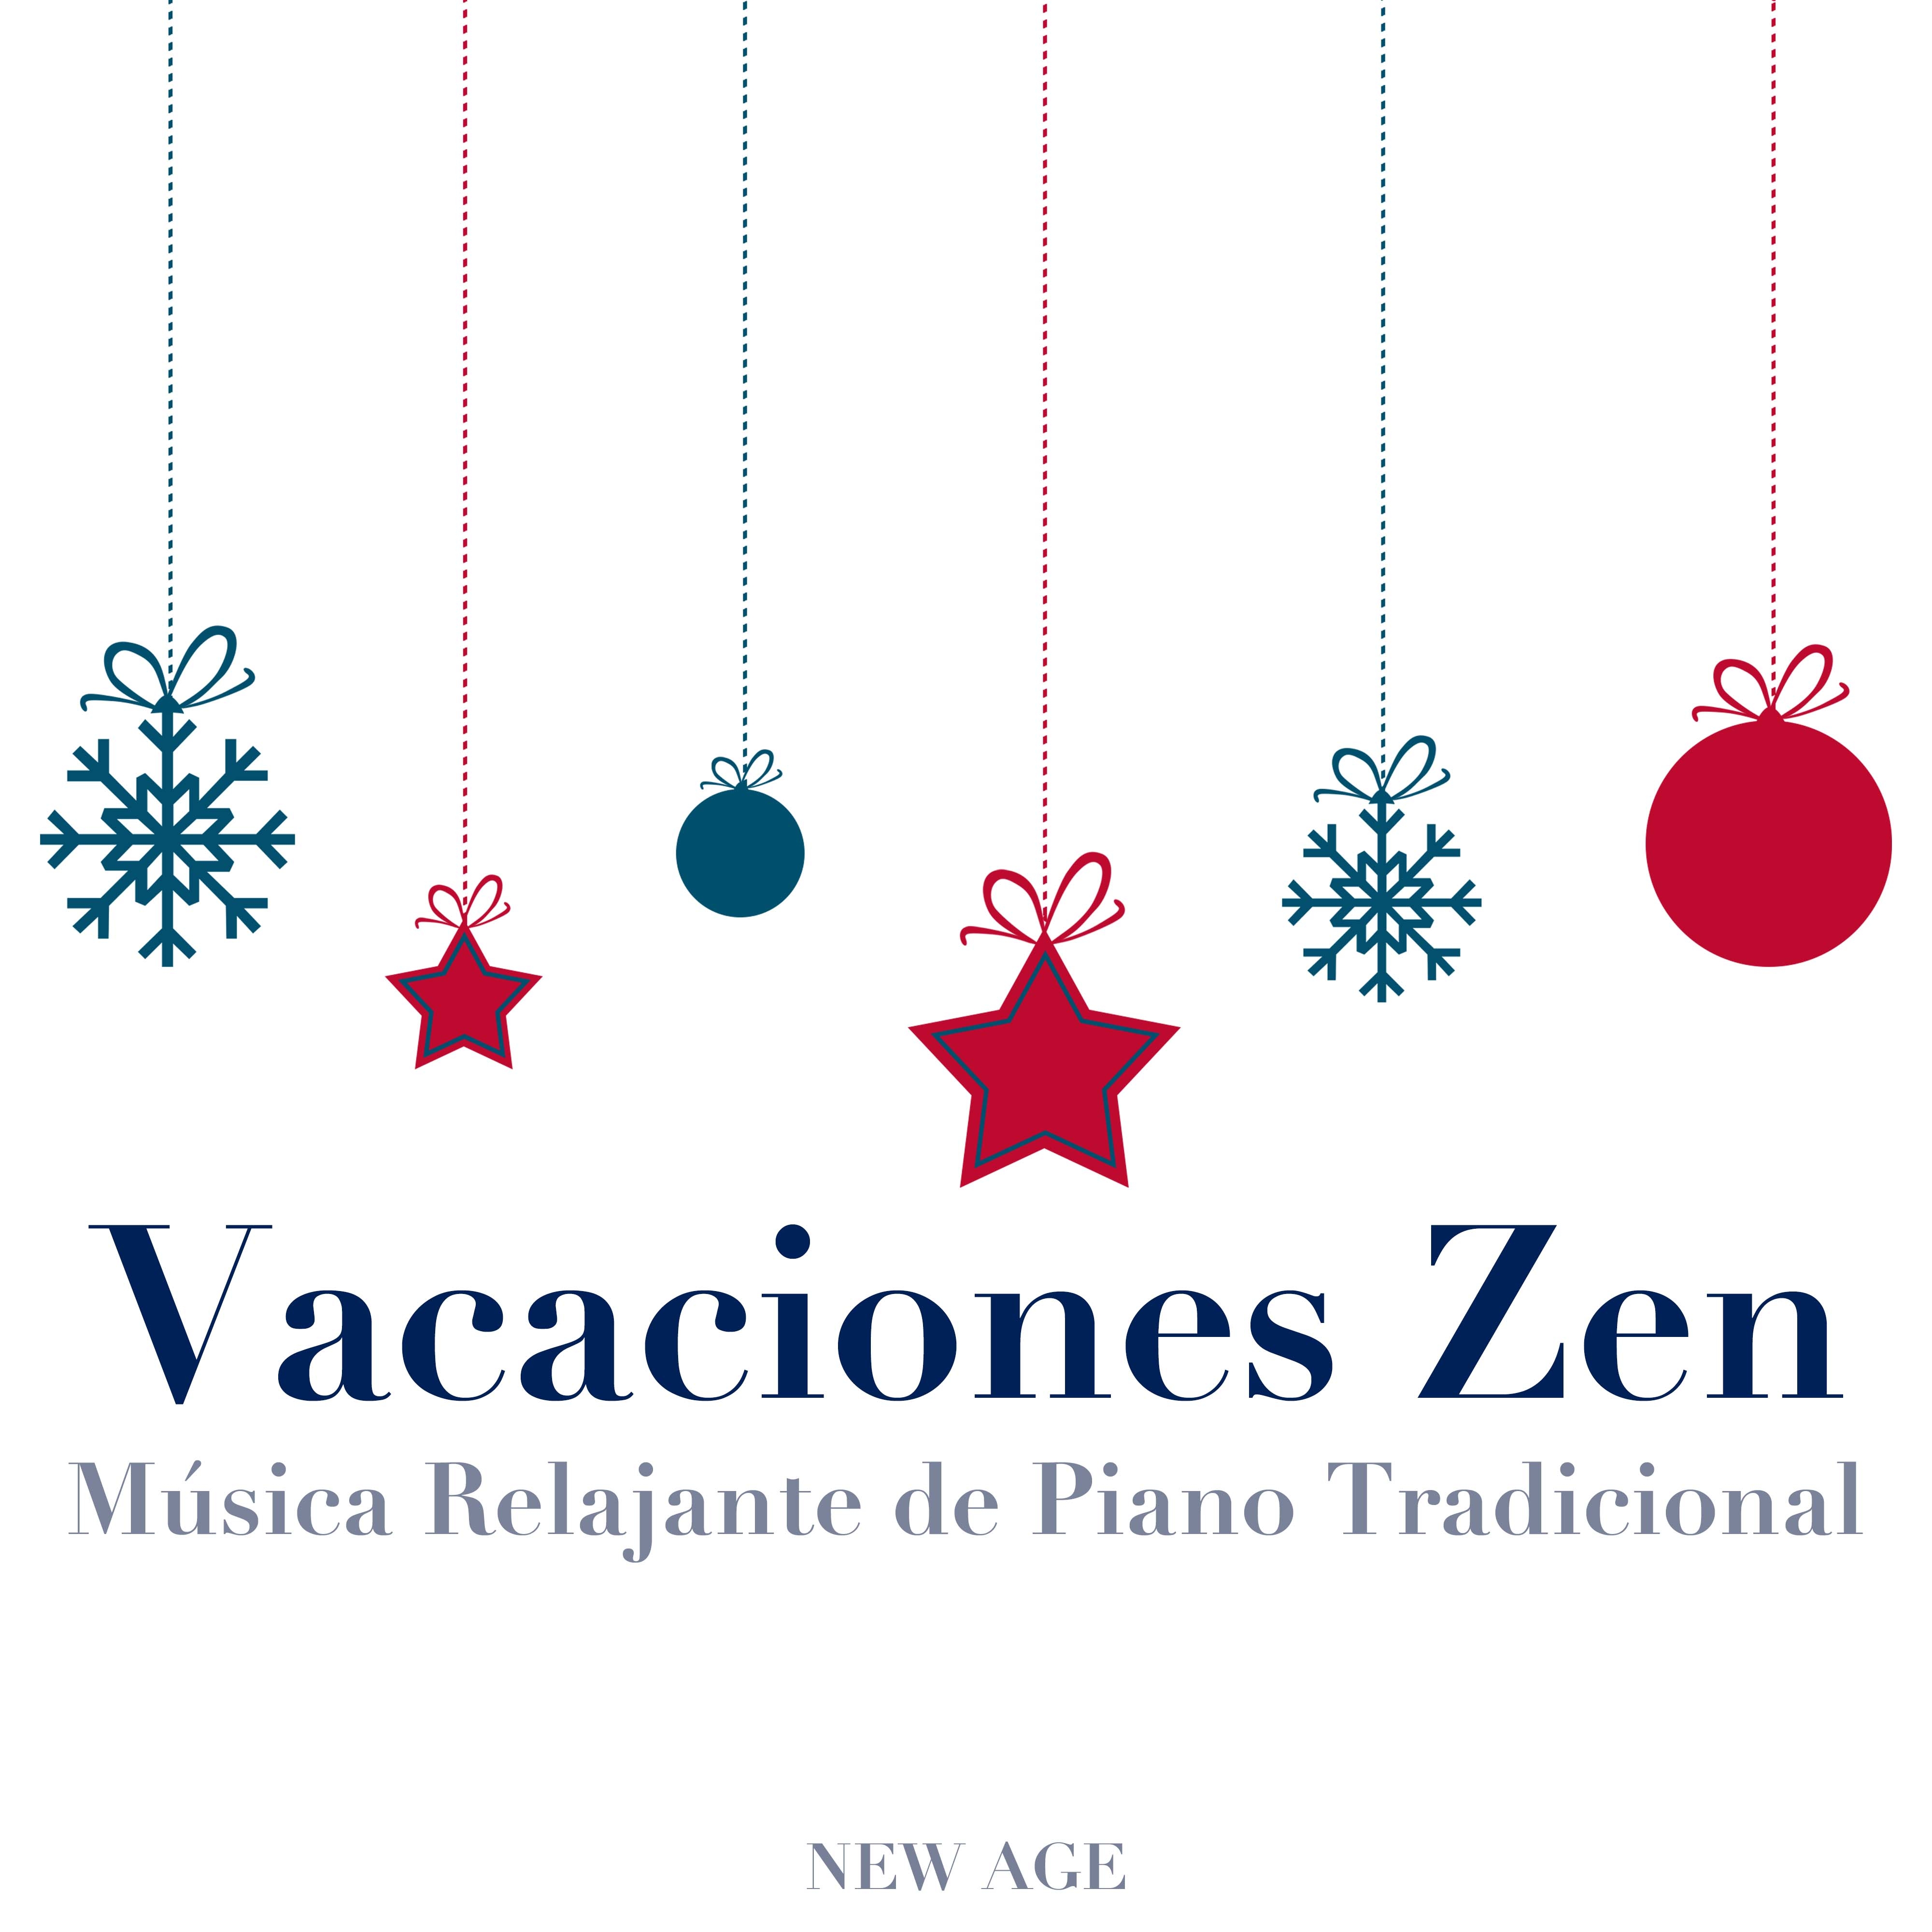 Vacaciones Zen: Música Relajante de Piano Tradicional para Celebrar la Navidad y el Año Nuevo con Amigos y Familia